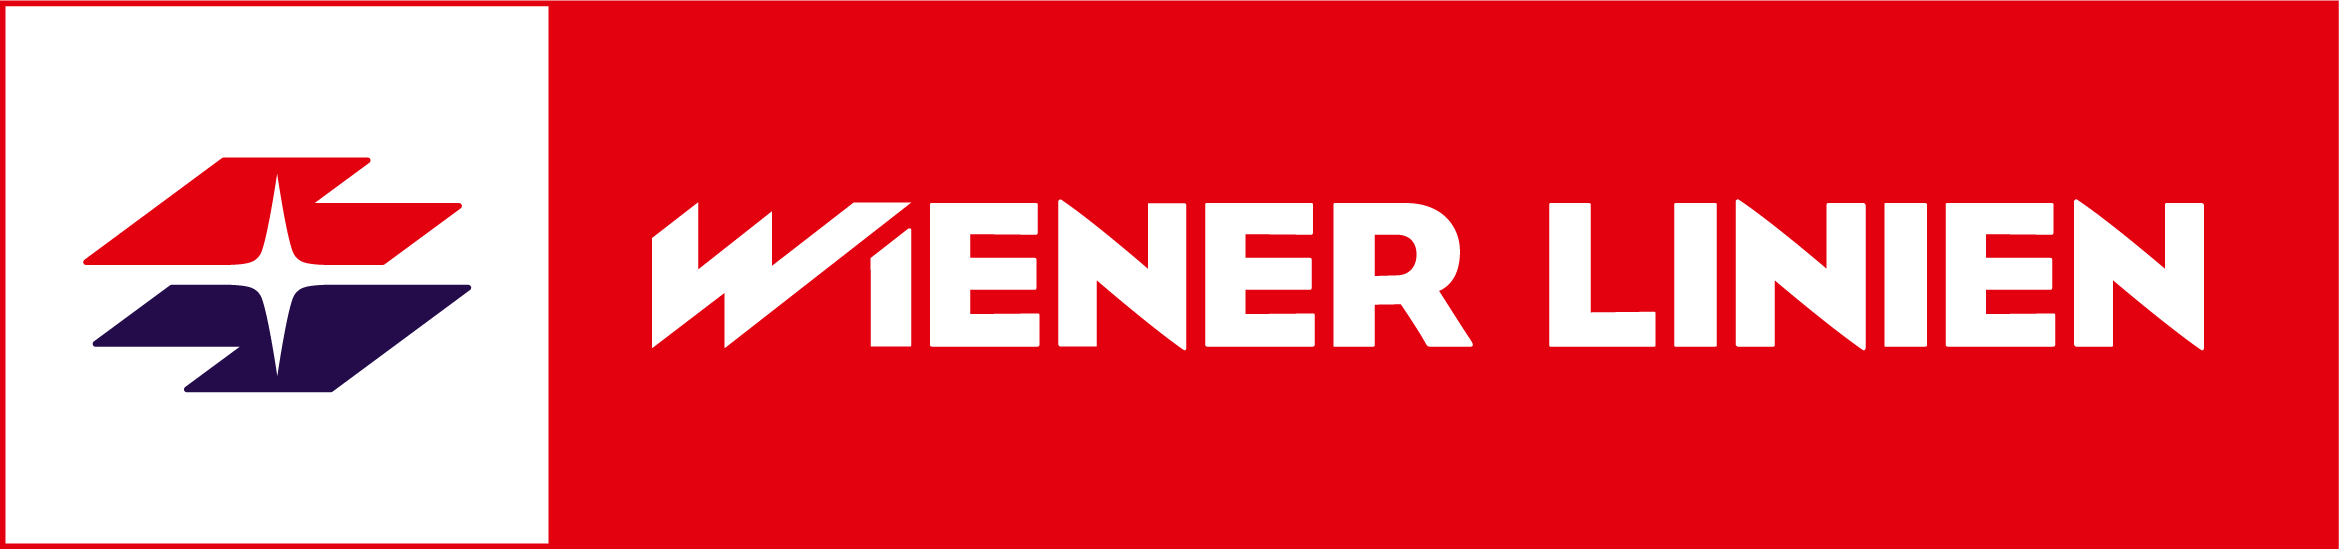 Wiener_Linien_logo.png